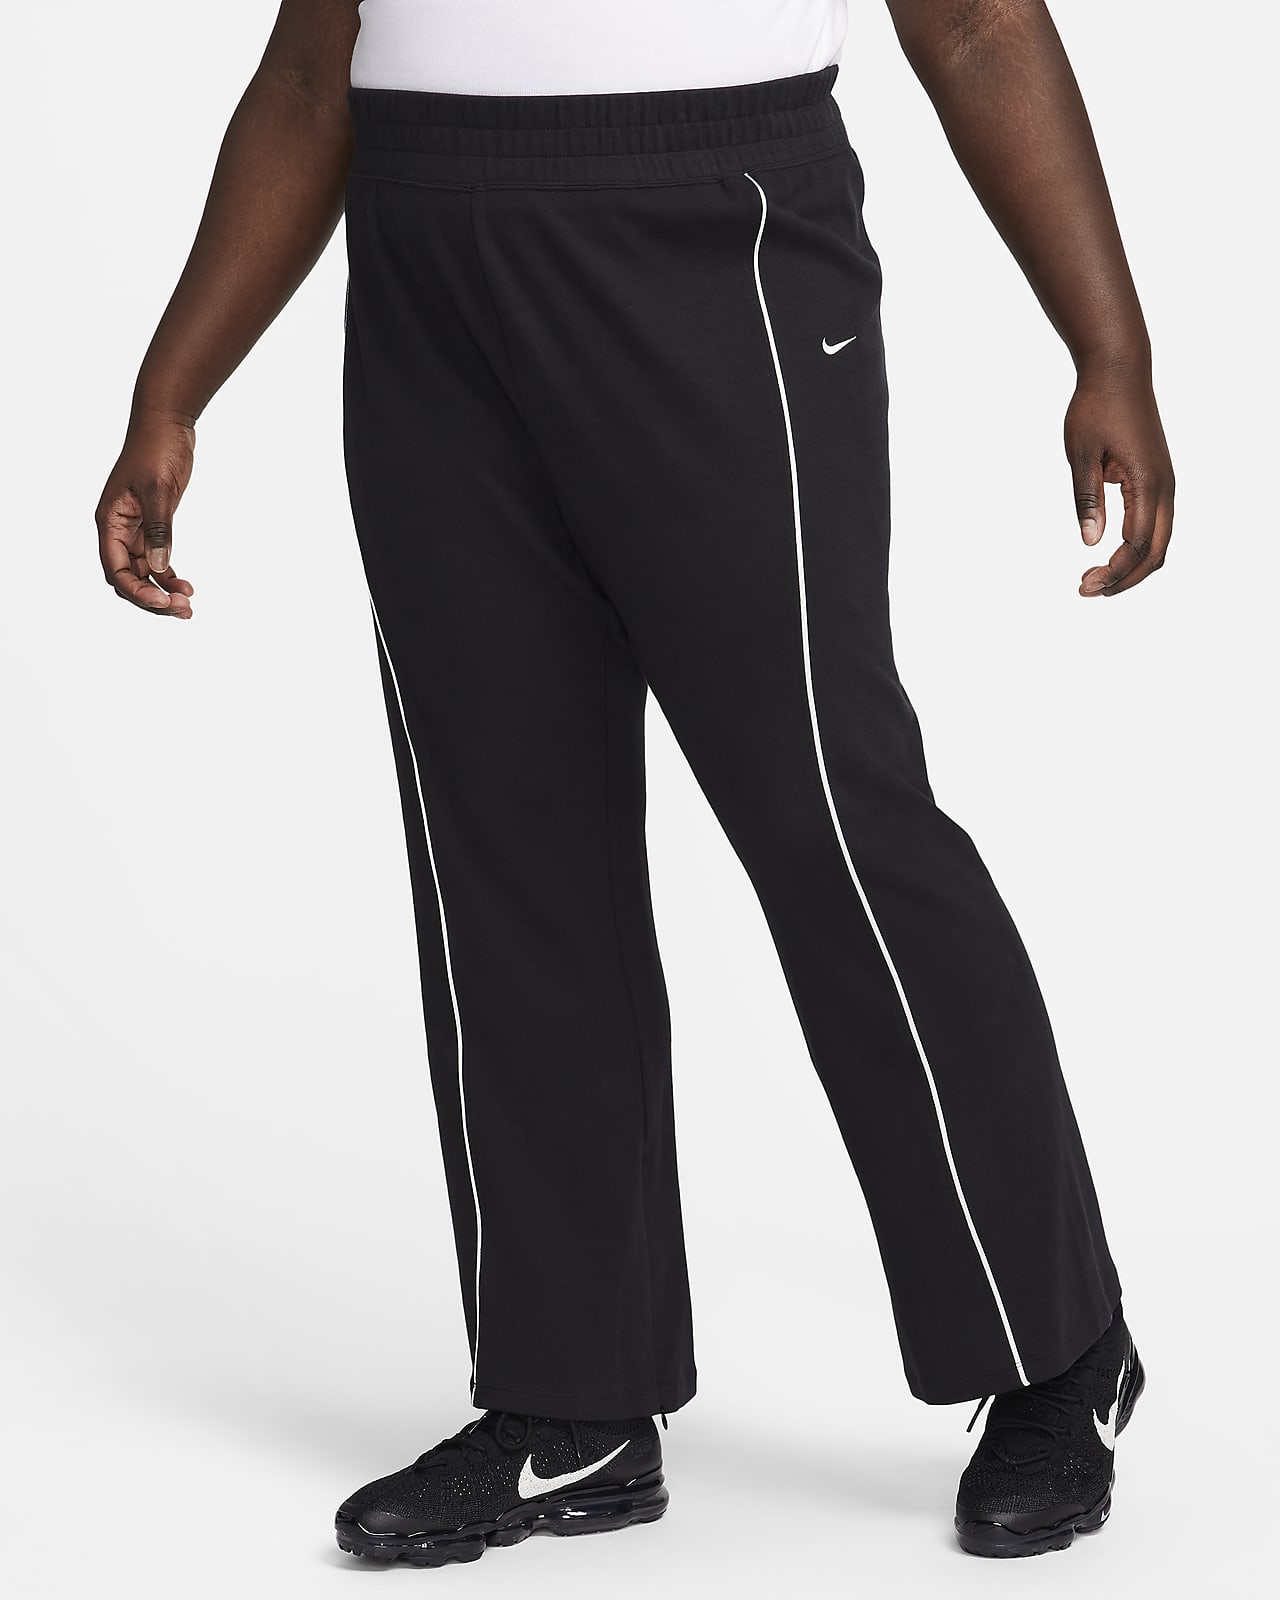 Nike Sportswear Collection hasított szárú női nadrág (Plus size méret)